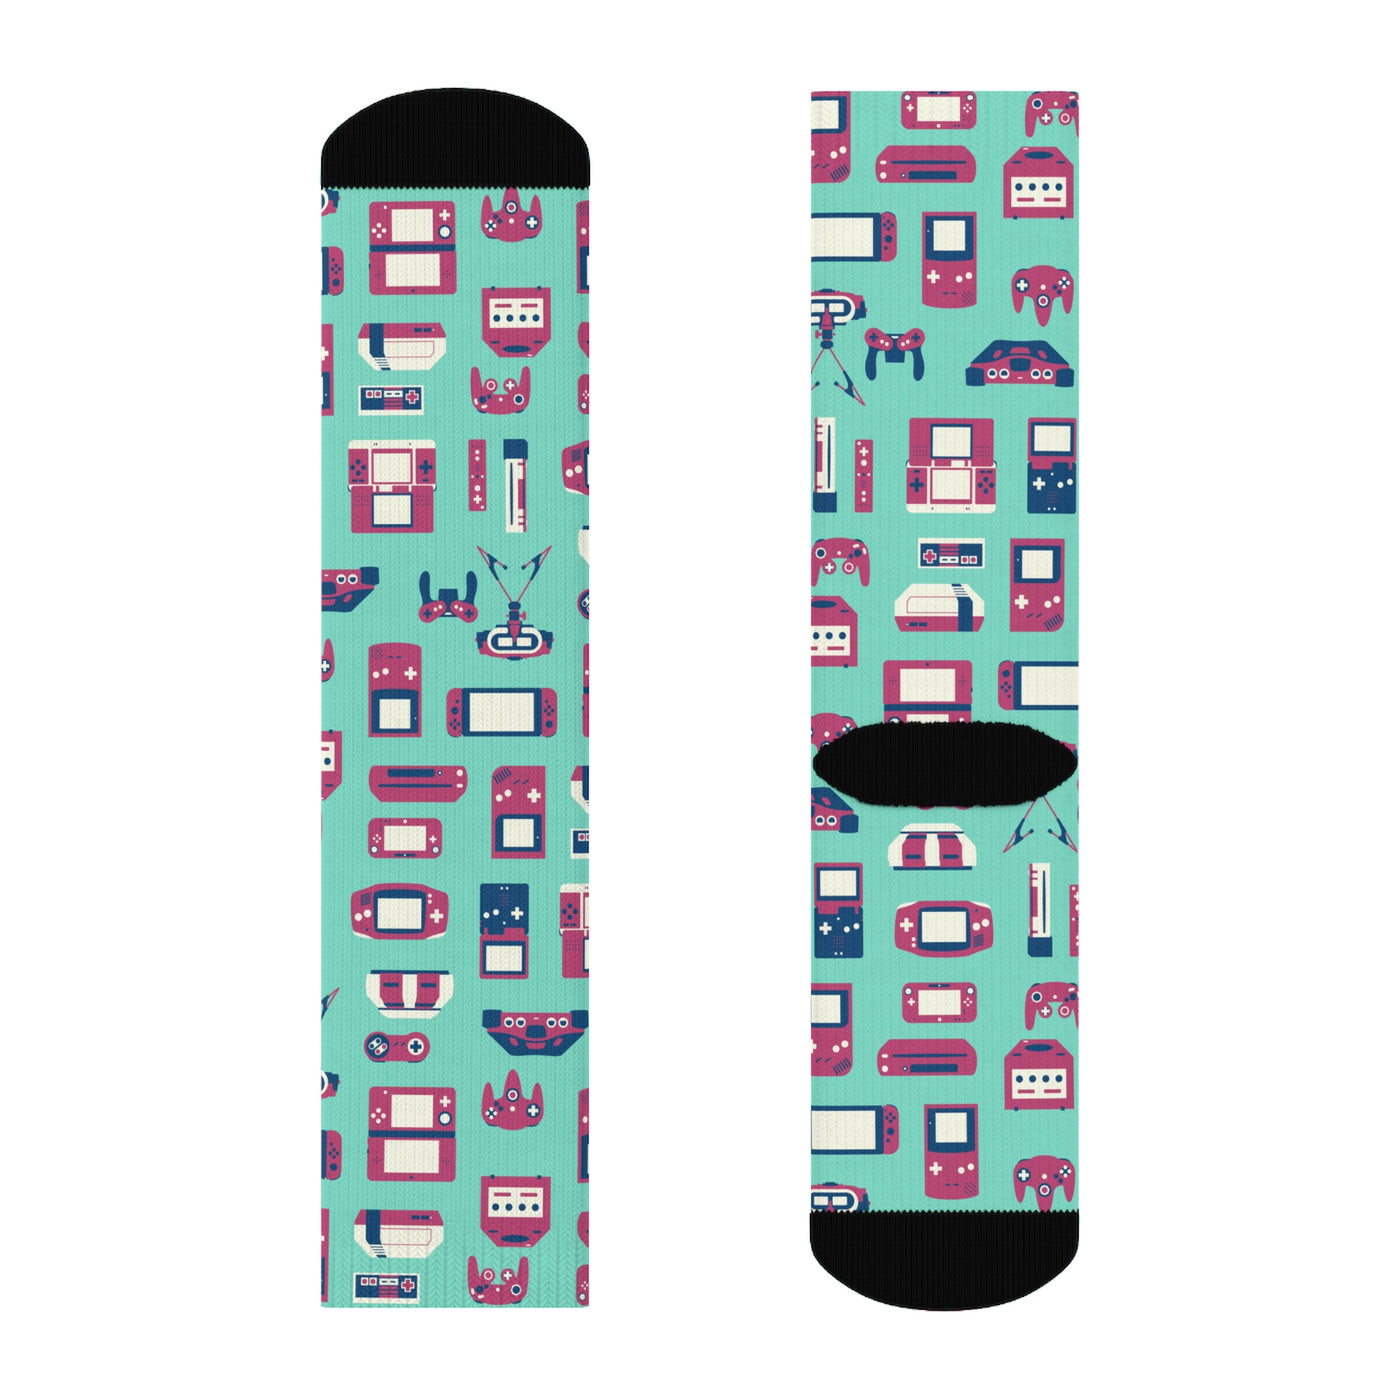 Nintendo Socks Console and Handheld pattern – Trinket Geek